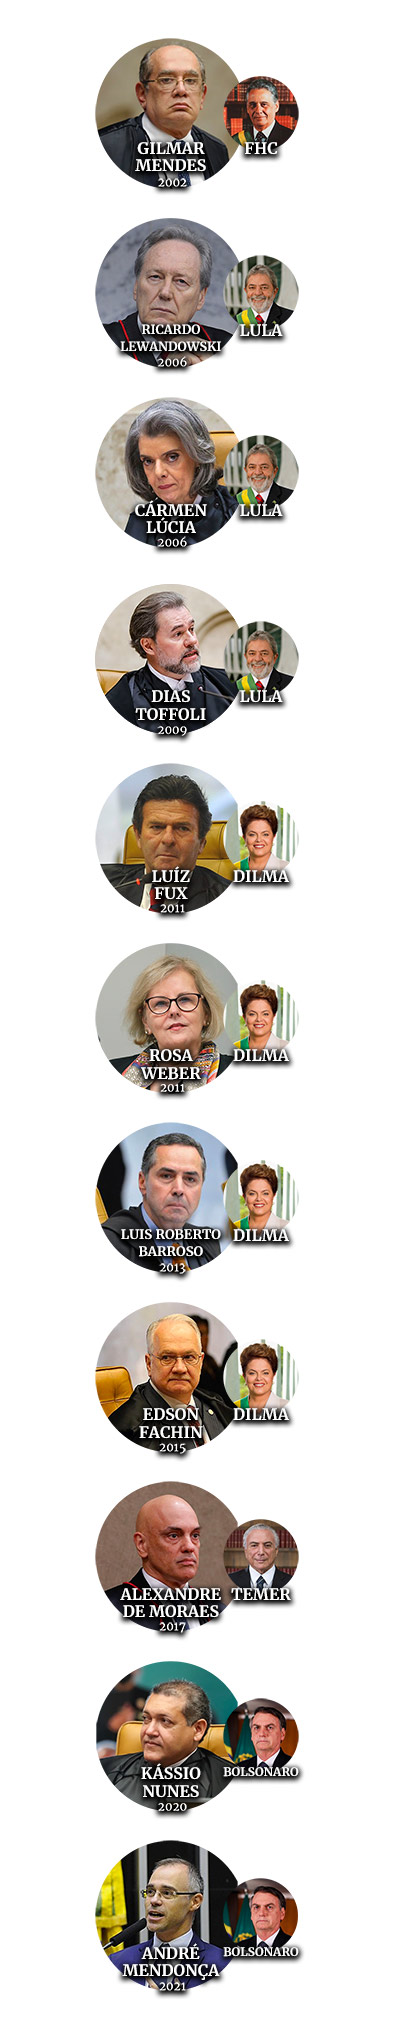 Ministros do STF indicados pelos presidentes